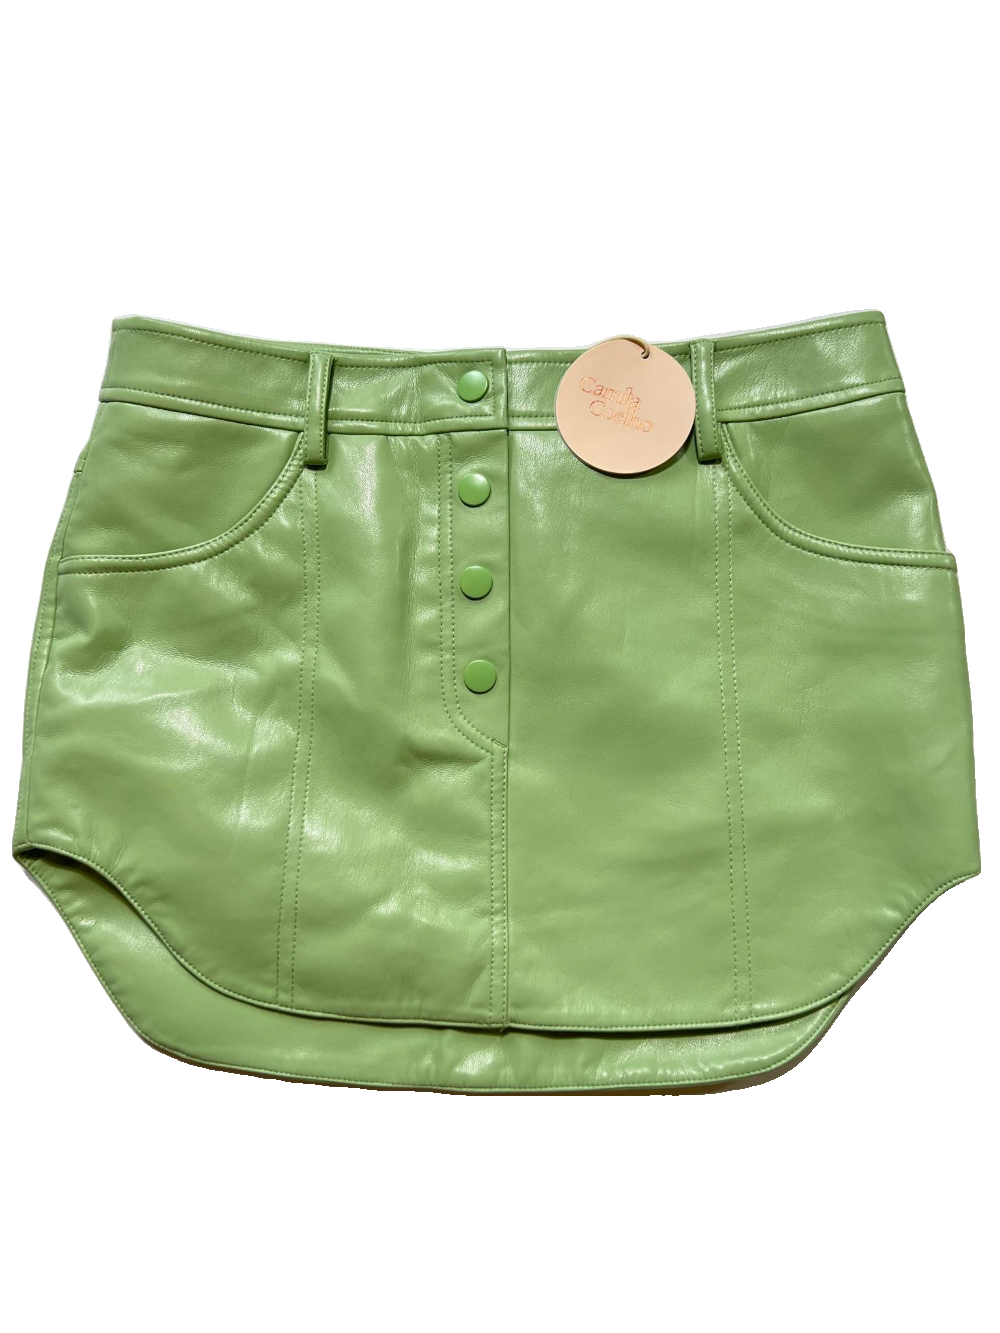 Camila Coelho - Green Mini Skirt - NEW WITH TAGS